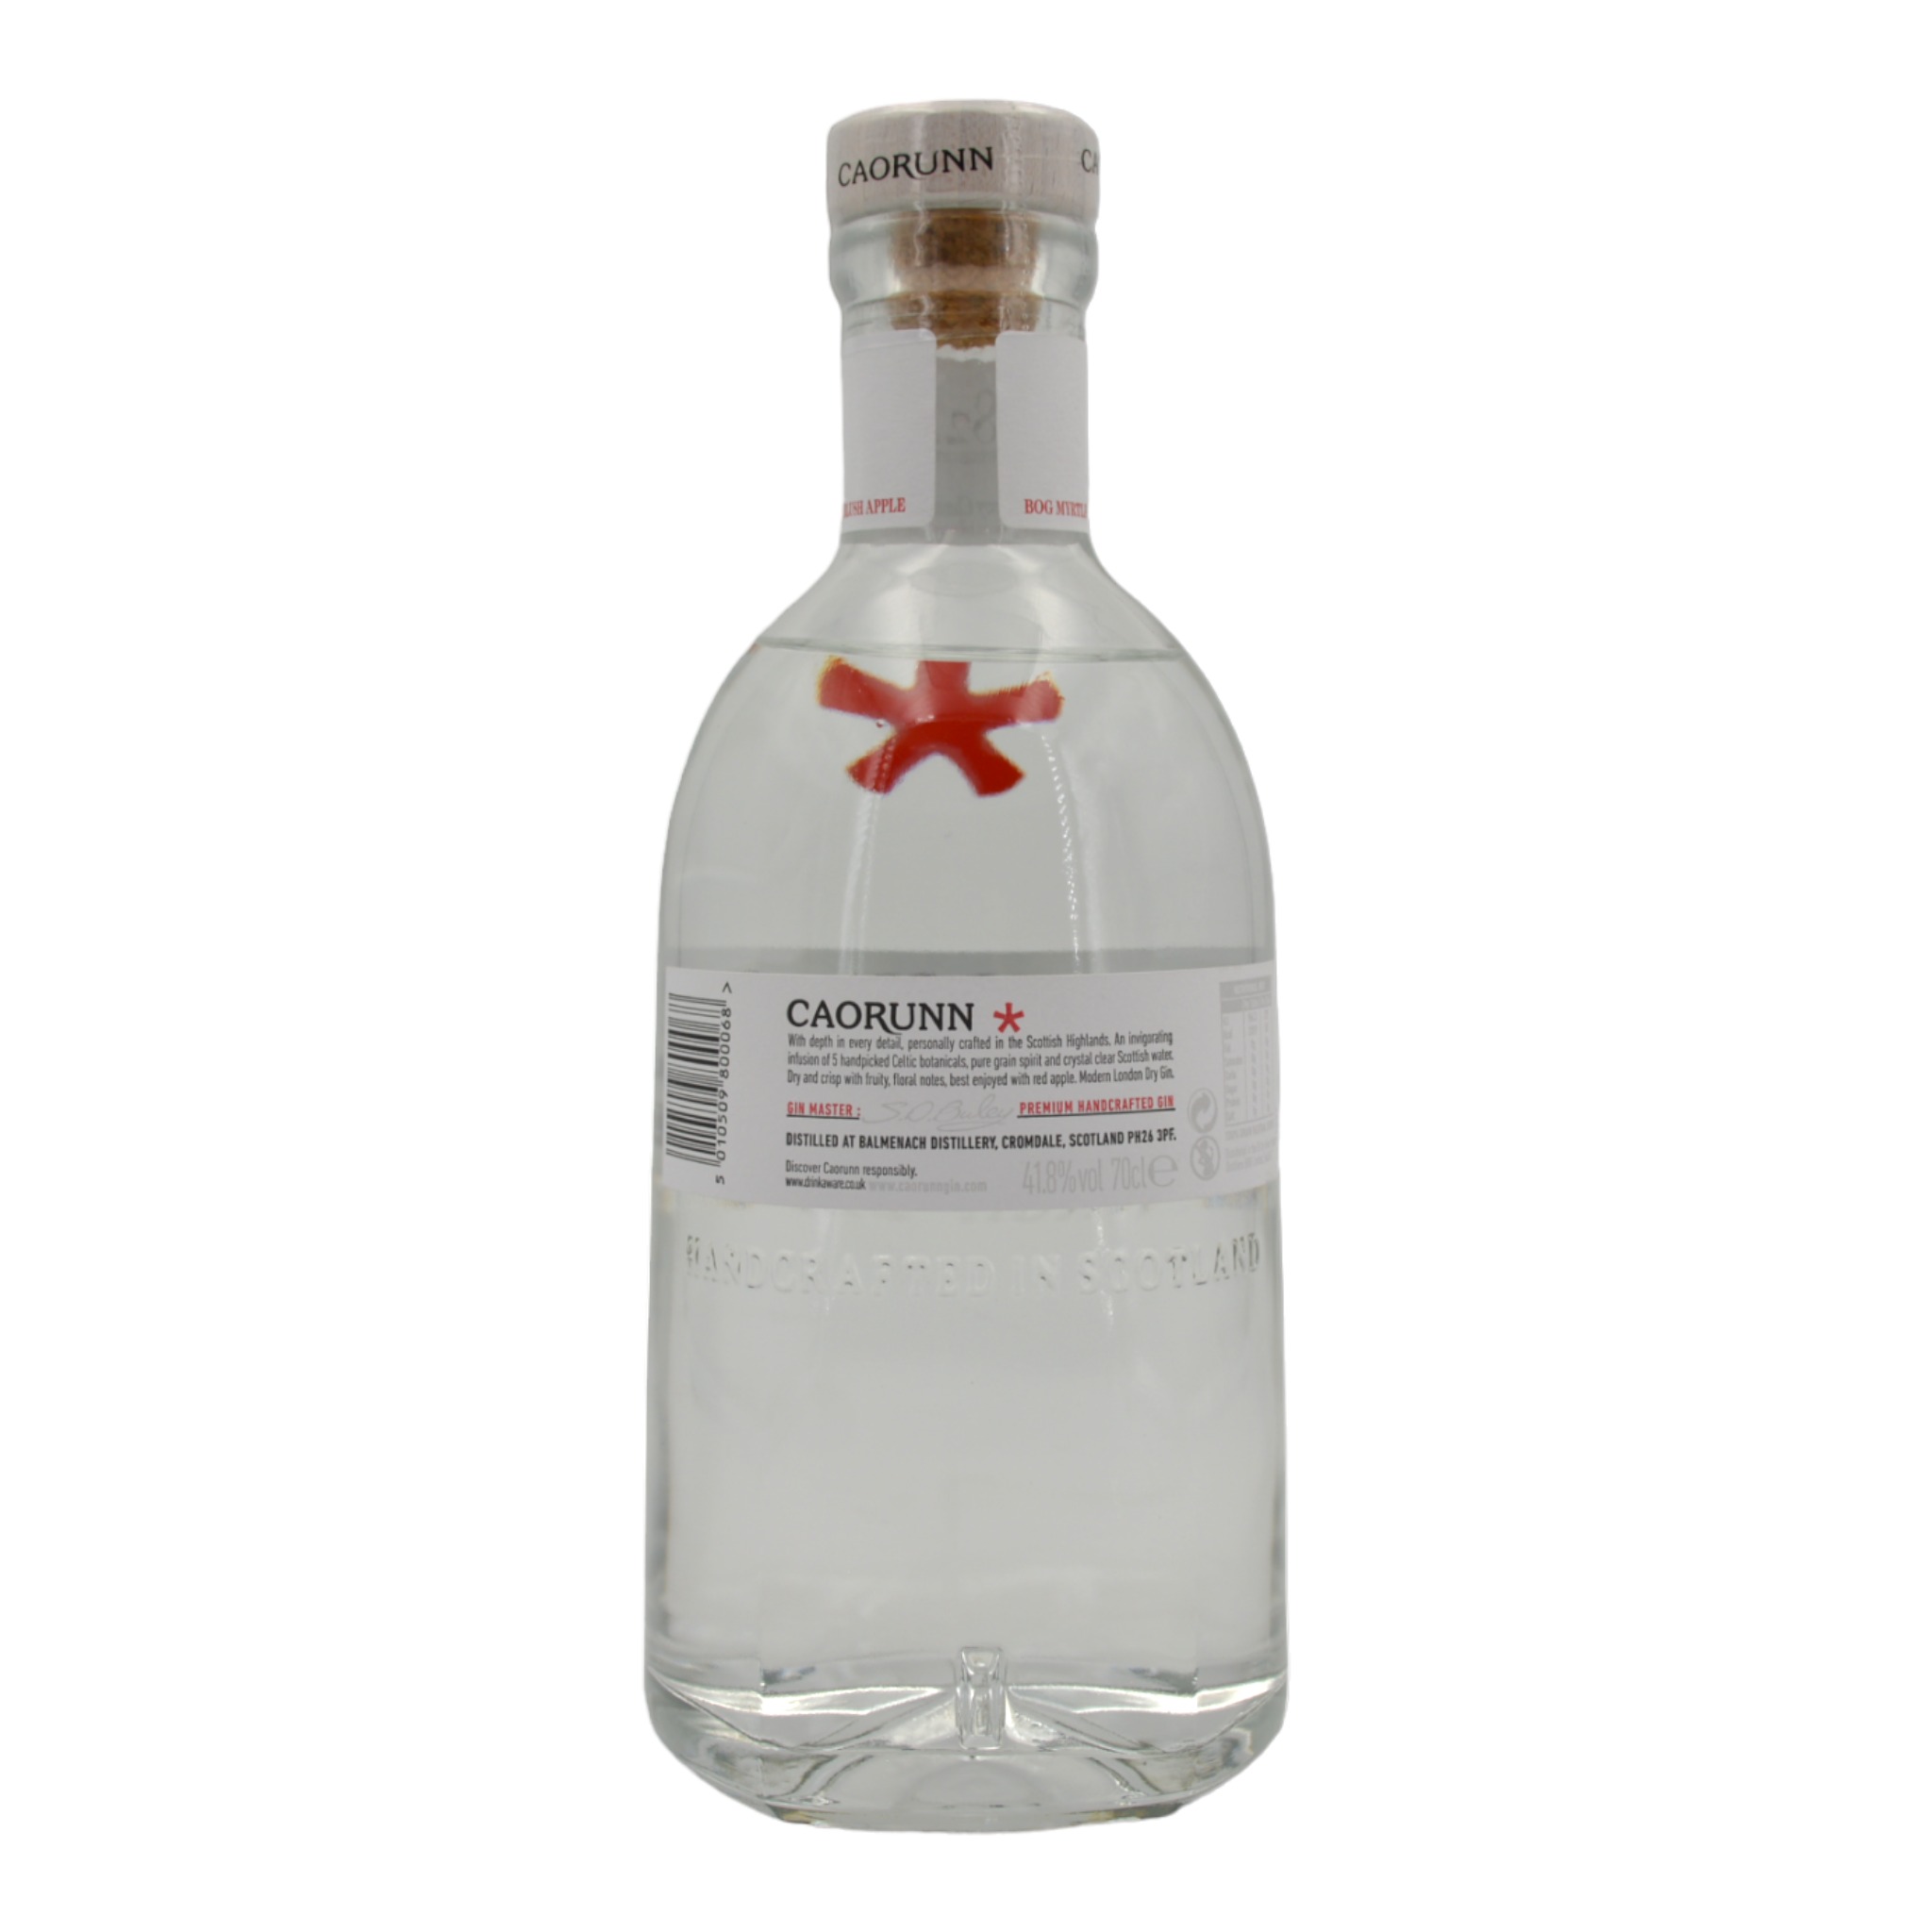 5010509800068Caorunn Ka-roon Small Batch Scottish Gin b - Weinhaus-Buecker